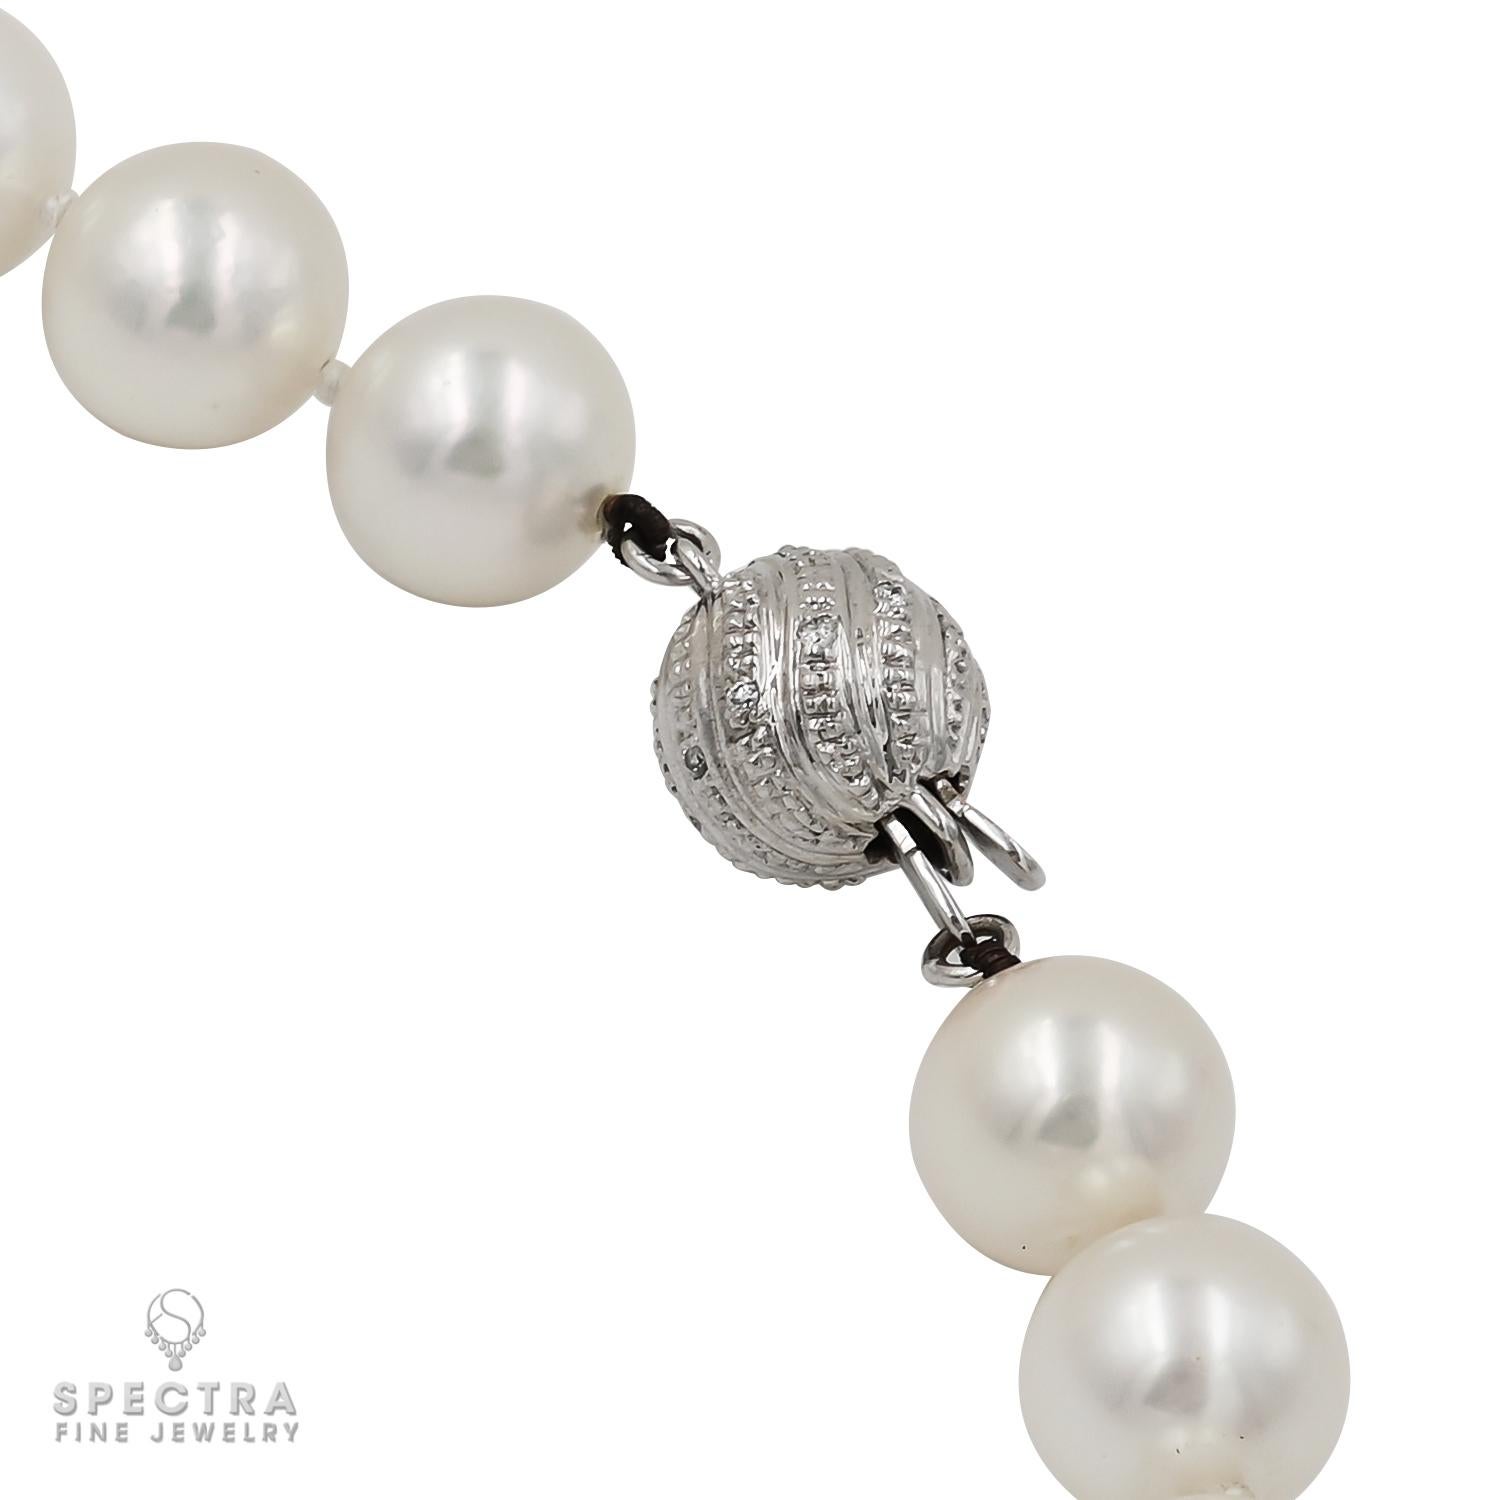 Diese exquisite Südseeperlenkette wurde mit viel Liebe zum Detail gefertigt und besteht aus 45 schimmernden Perlen. Jede Perle misst 9 mm im Durchmesser und zeigt die luxuriöse Schönheit der Südseeperlen.

Mit einem raffinierten Verschluss aus